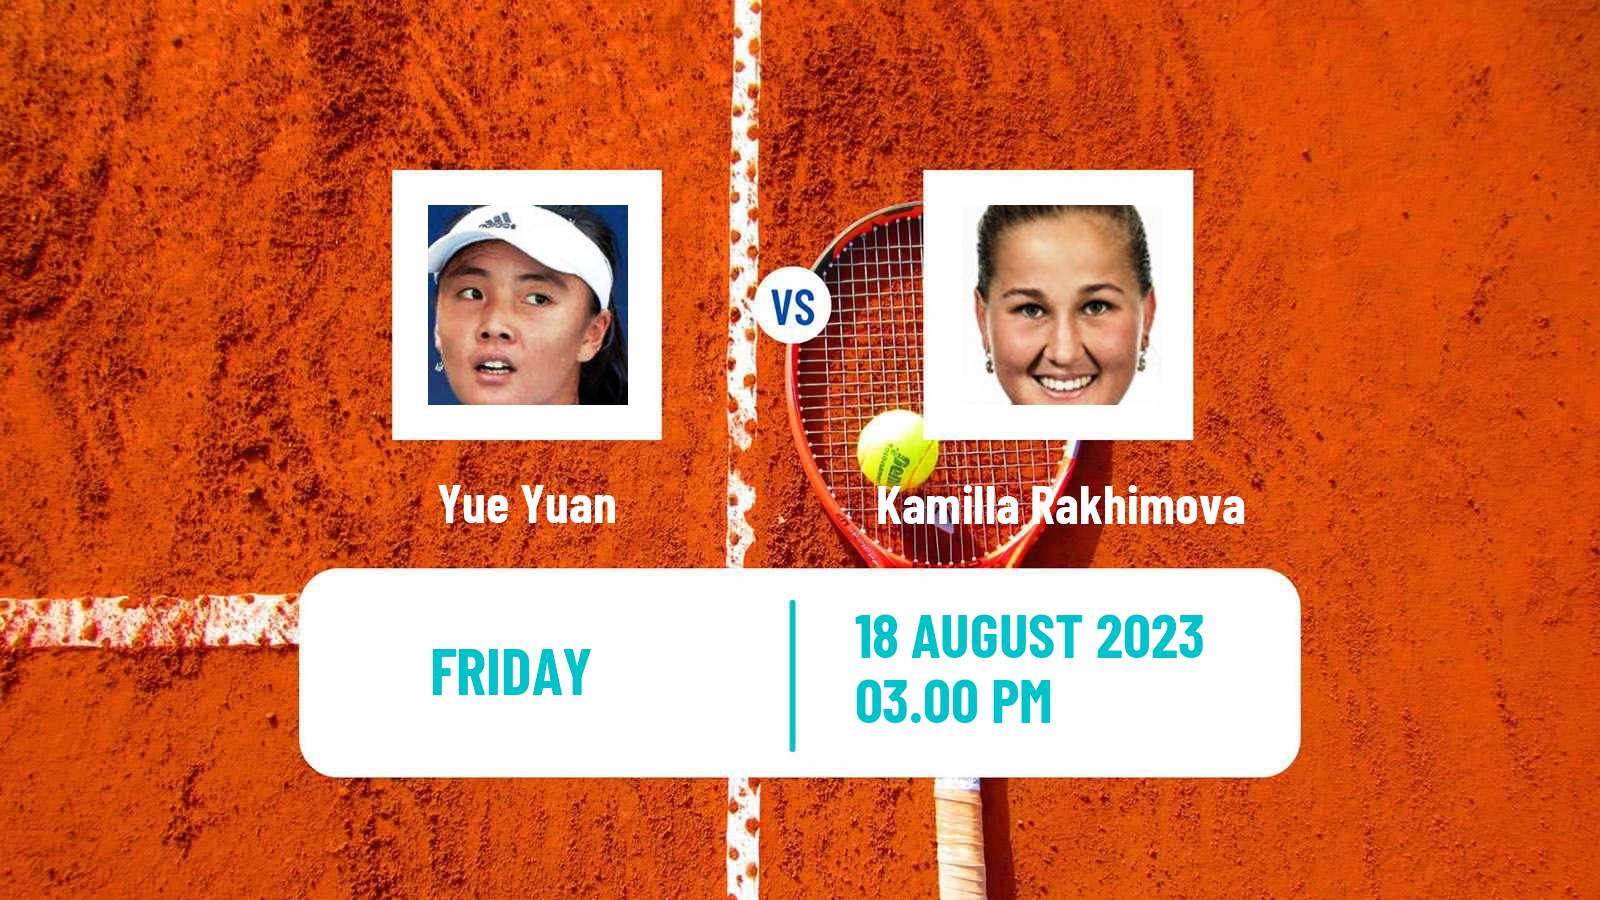 Tennis Stanford Challenger Women Yue Yuan - Kamilla Rakhimova